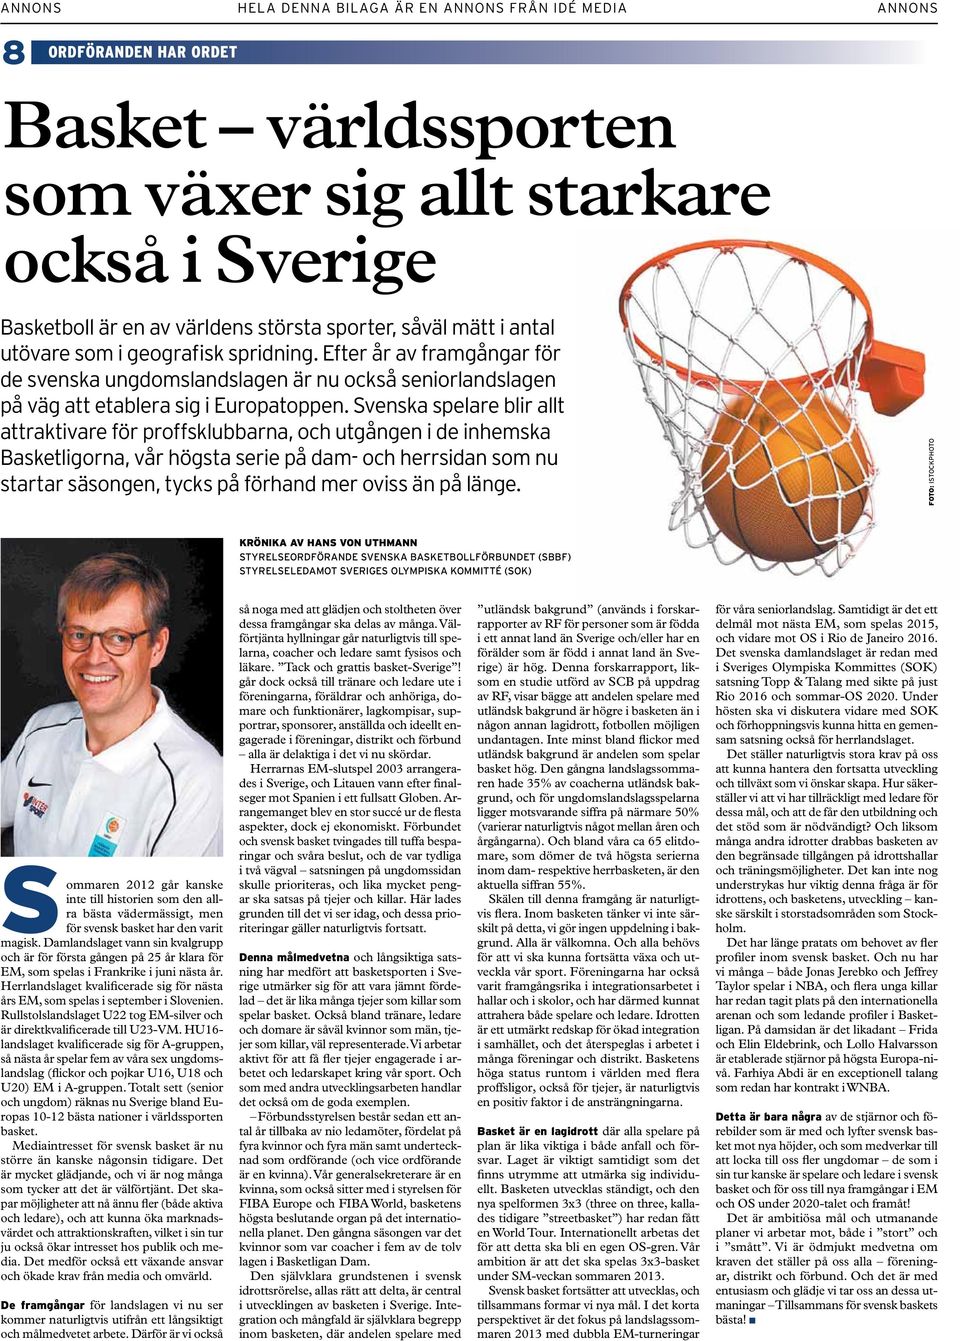 Svenska spelare blir allt attraktivare för proffsklubbarna, och utgången i de inhemska Basketligorna, vår högsta serie på dam- och herrsidan som nu startar säsongen, tycks på förhand mer oviss än på